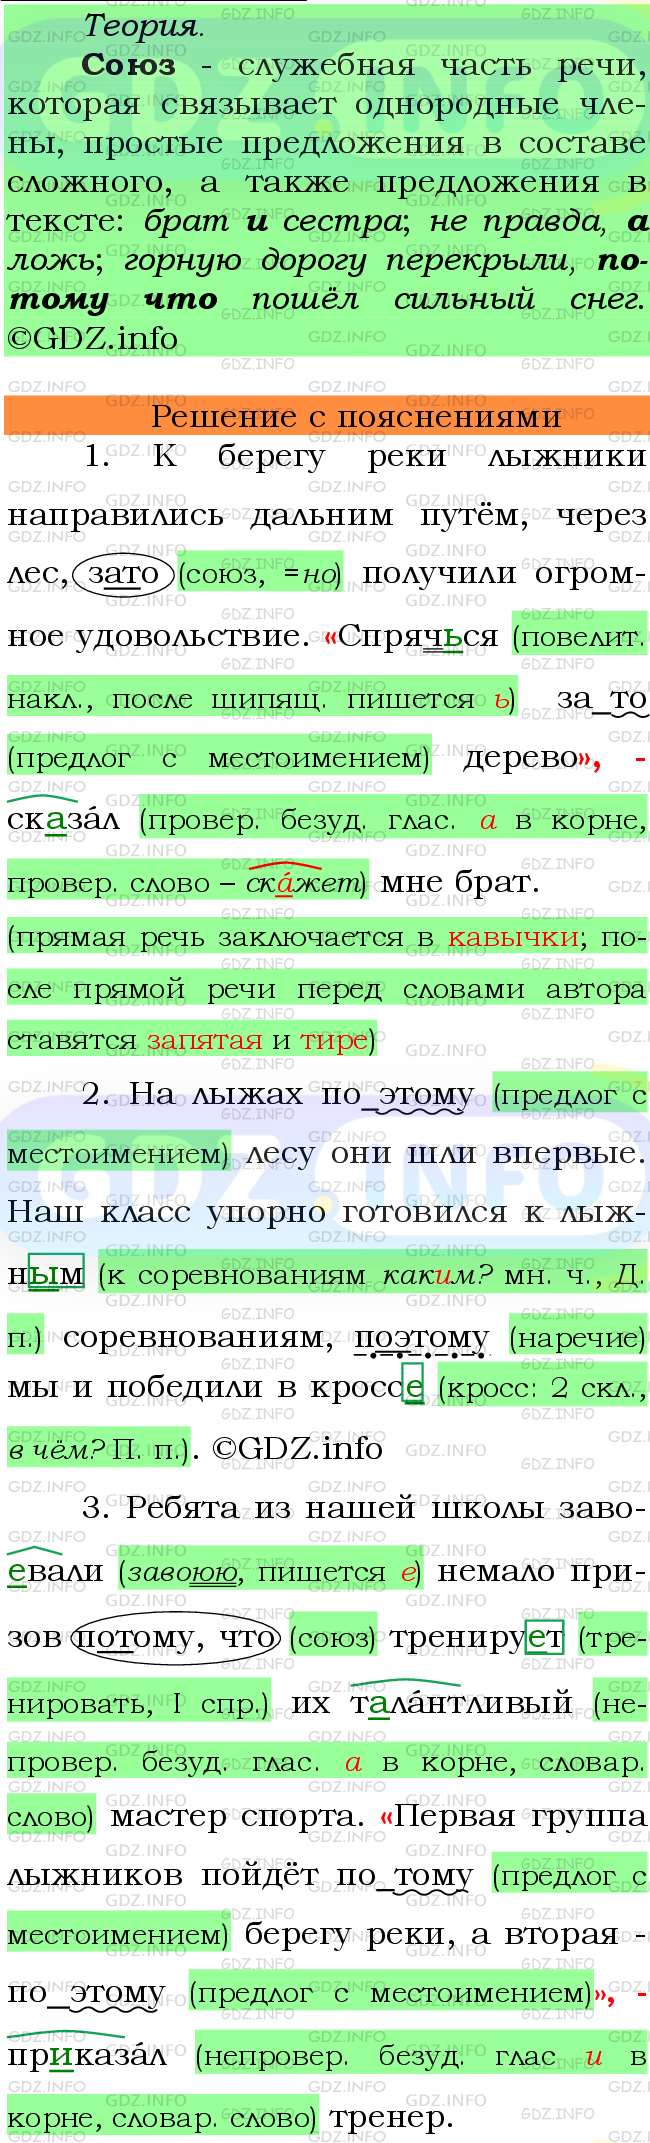 Фото подробного решения: Номер №482 из ГДЗ по Русскому языку 7 класс: Ладыженская Т.А.